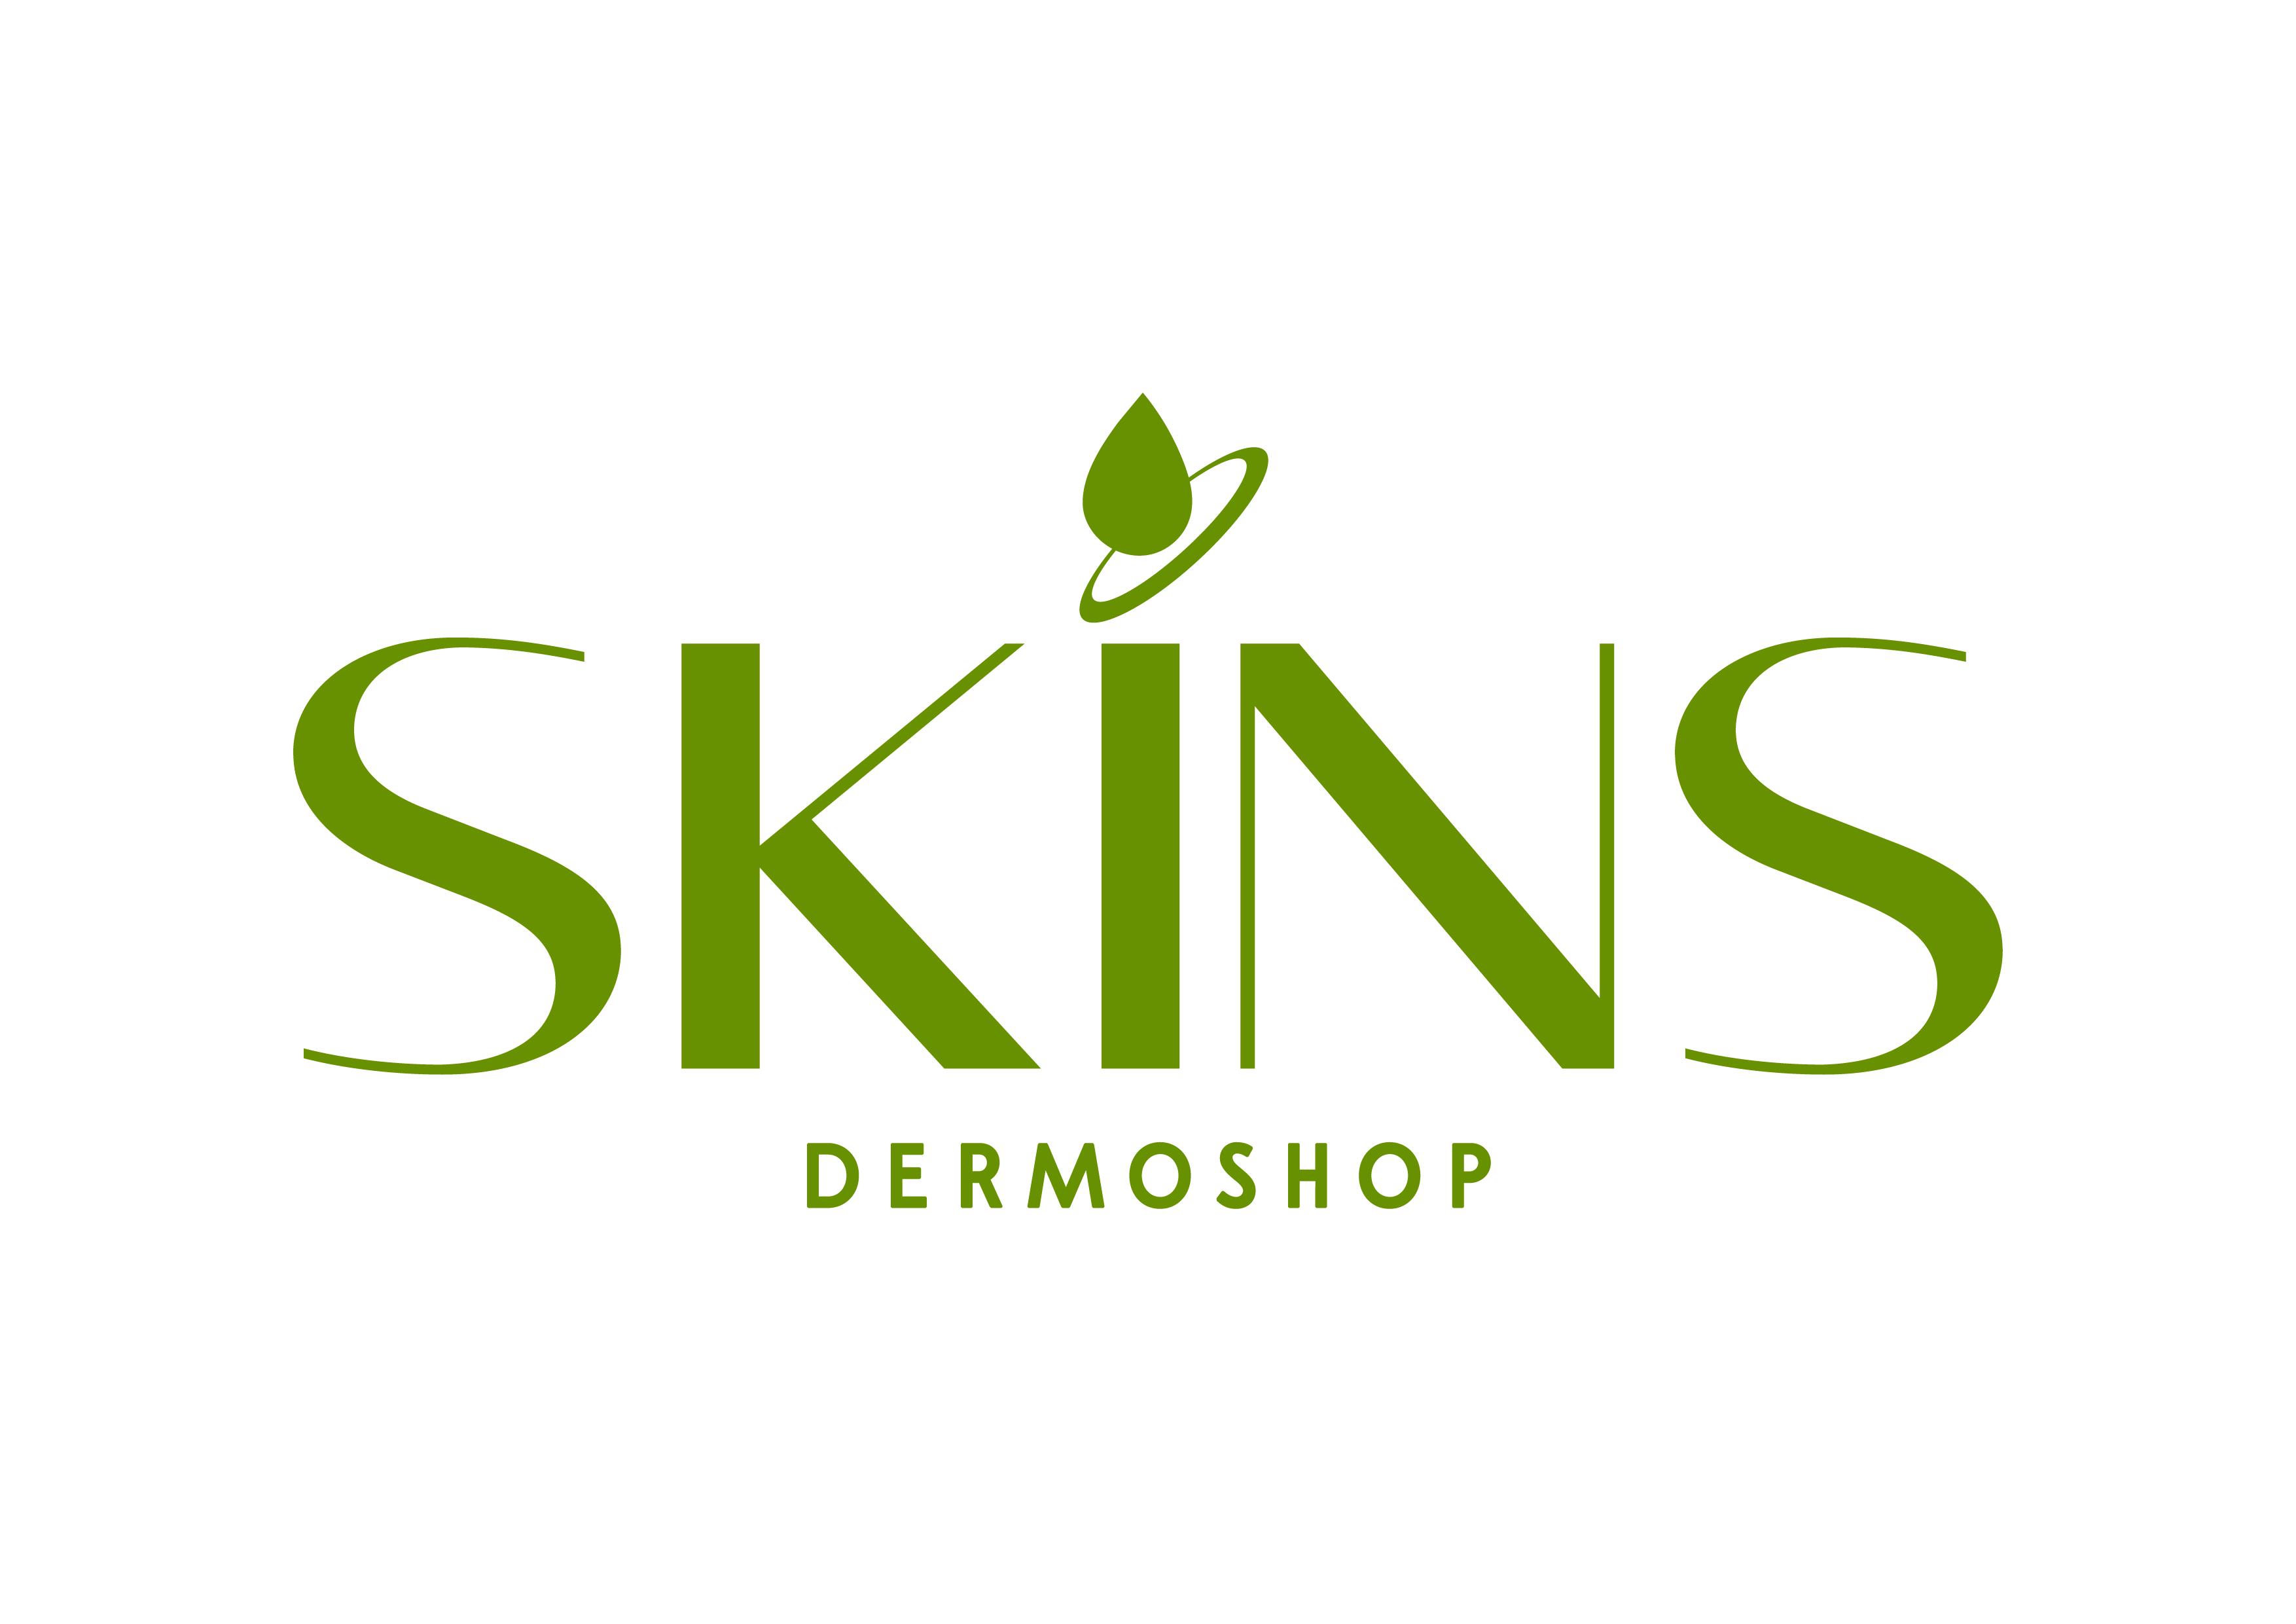 Skins Dermoshop